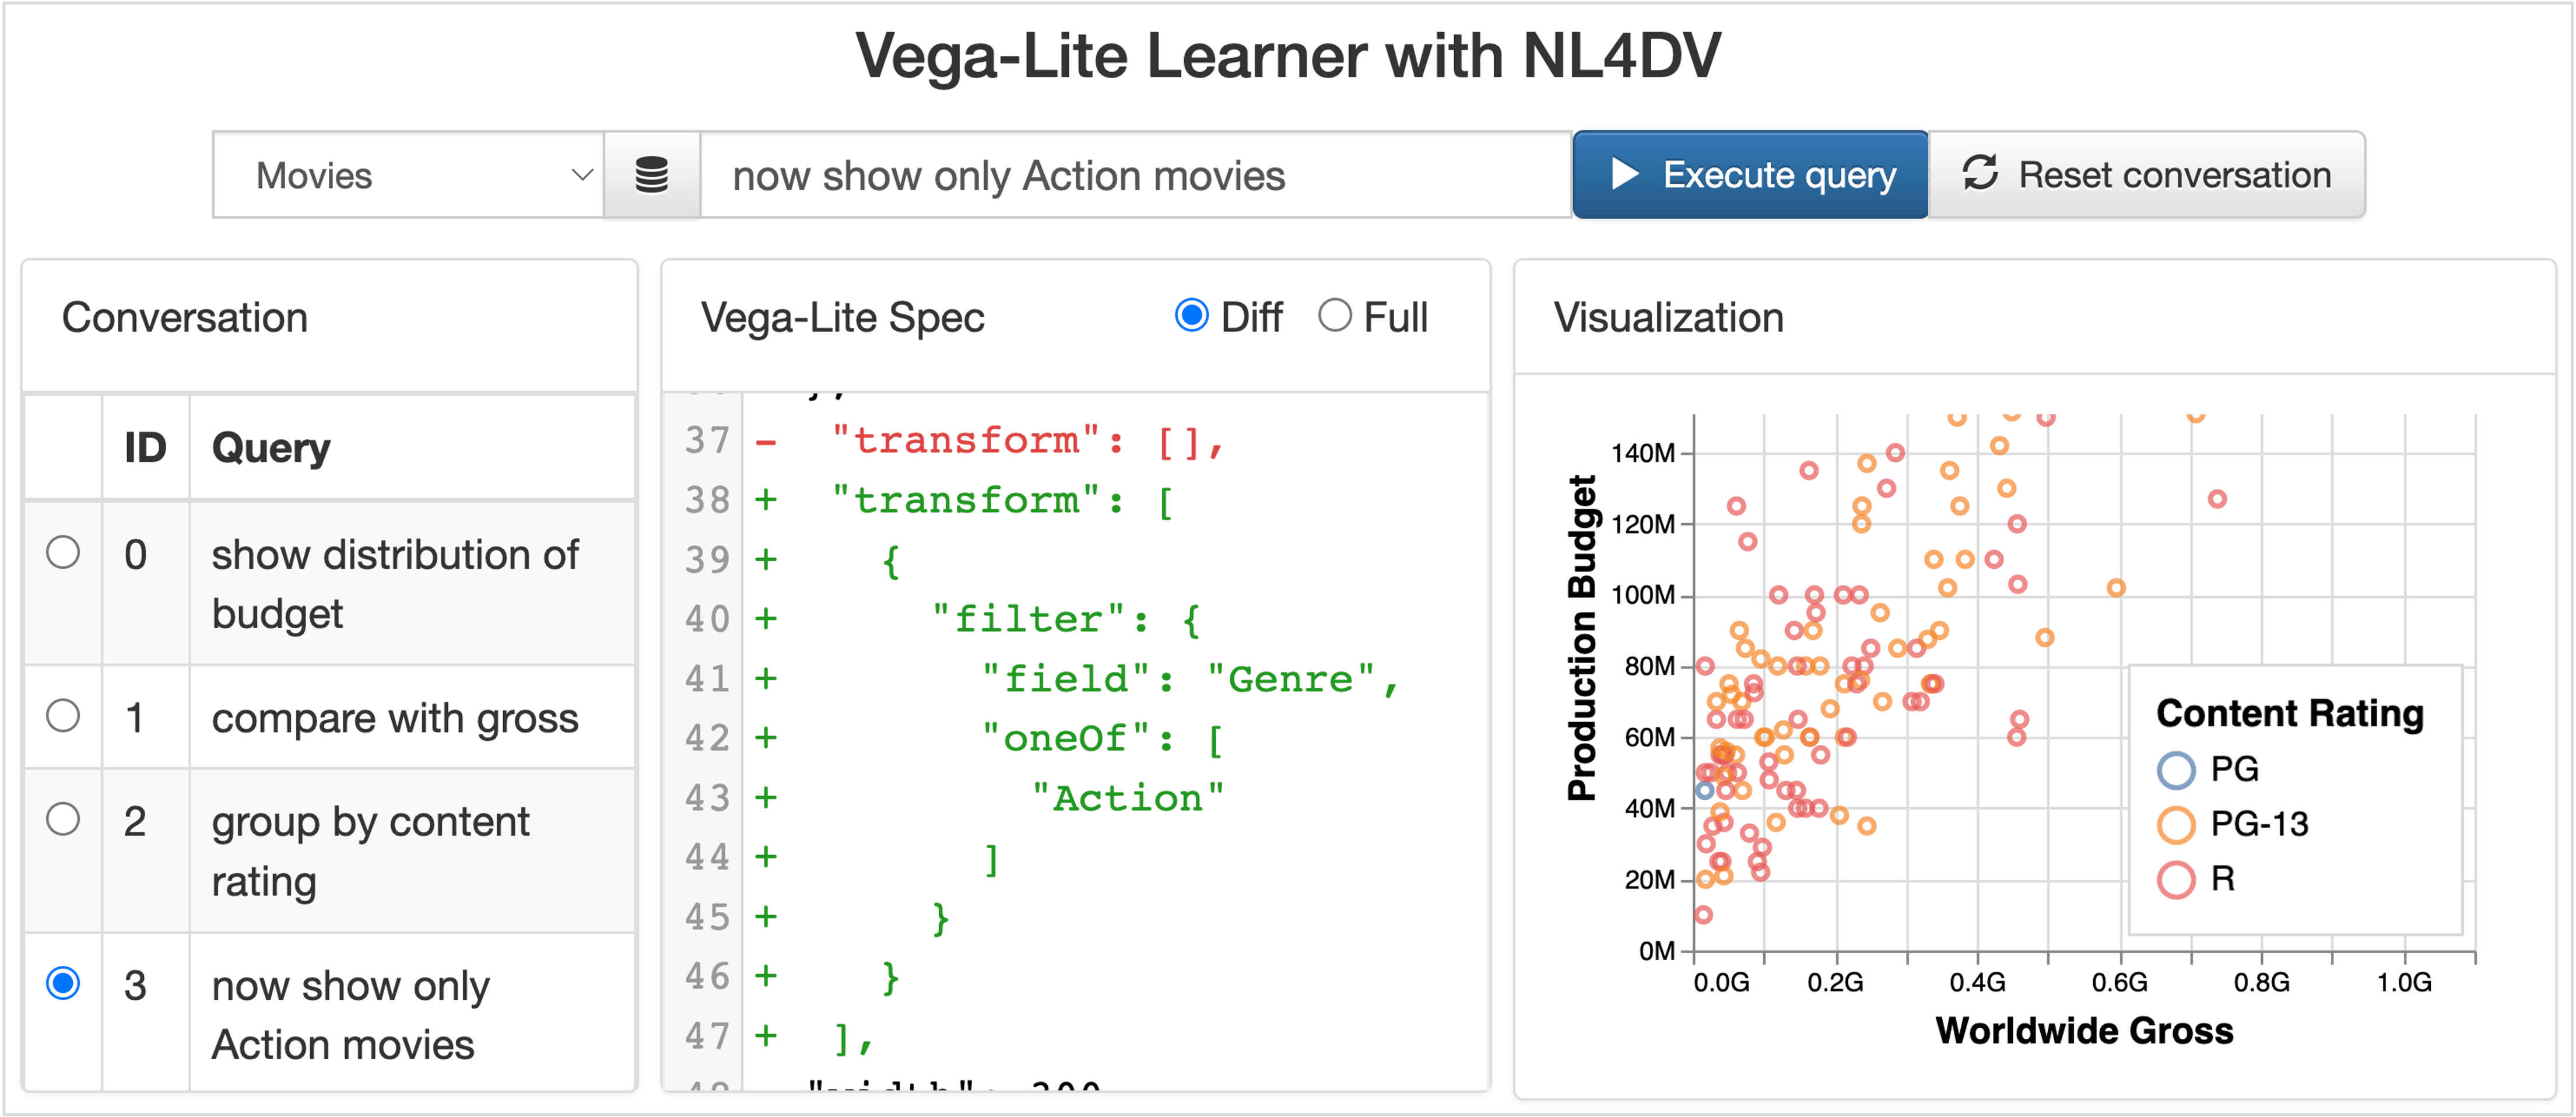 Vega-Lite Learner